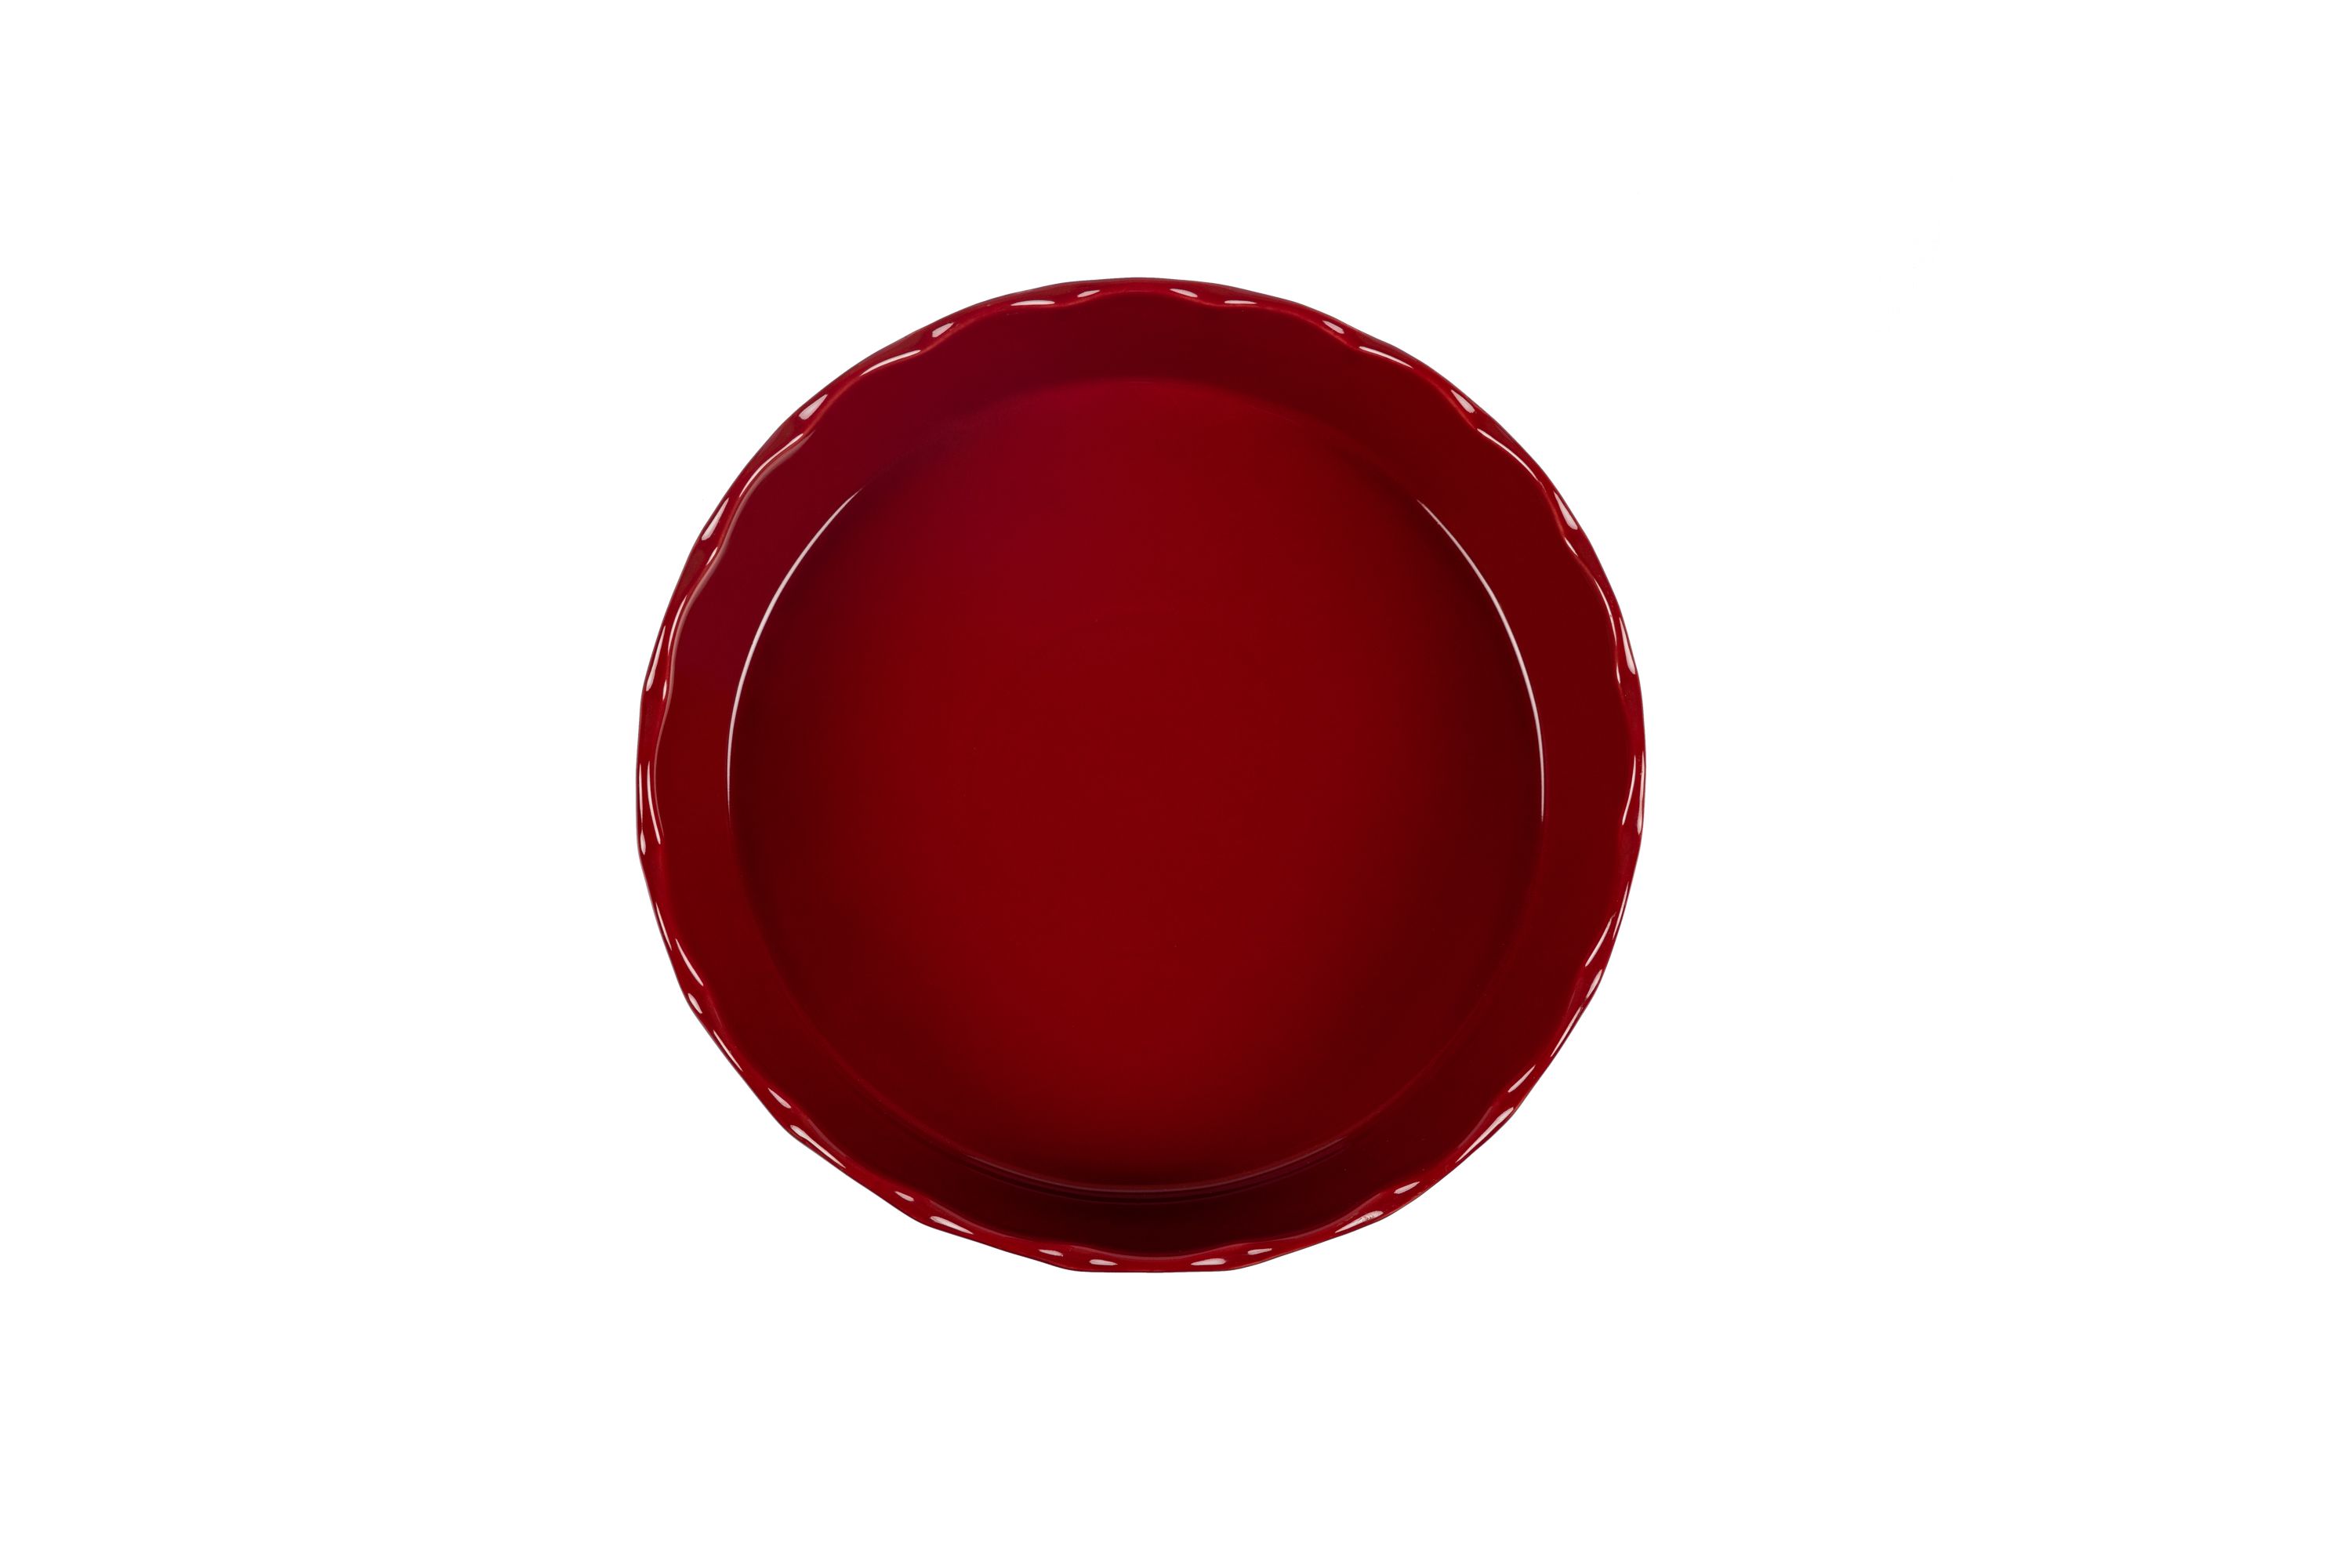 Blick von oben auf die rote, runde Stoneware-Ofenform